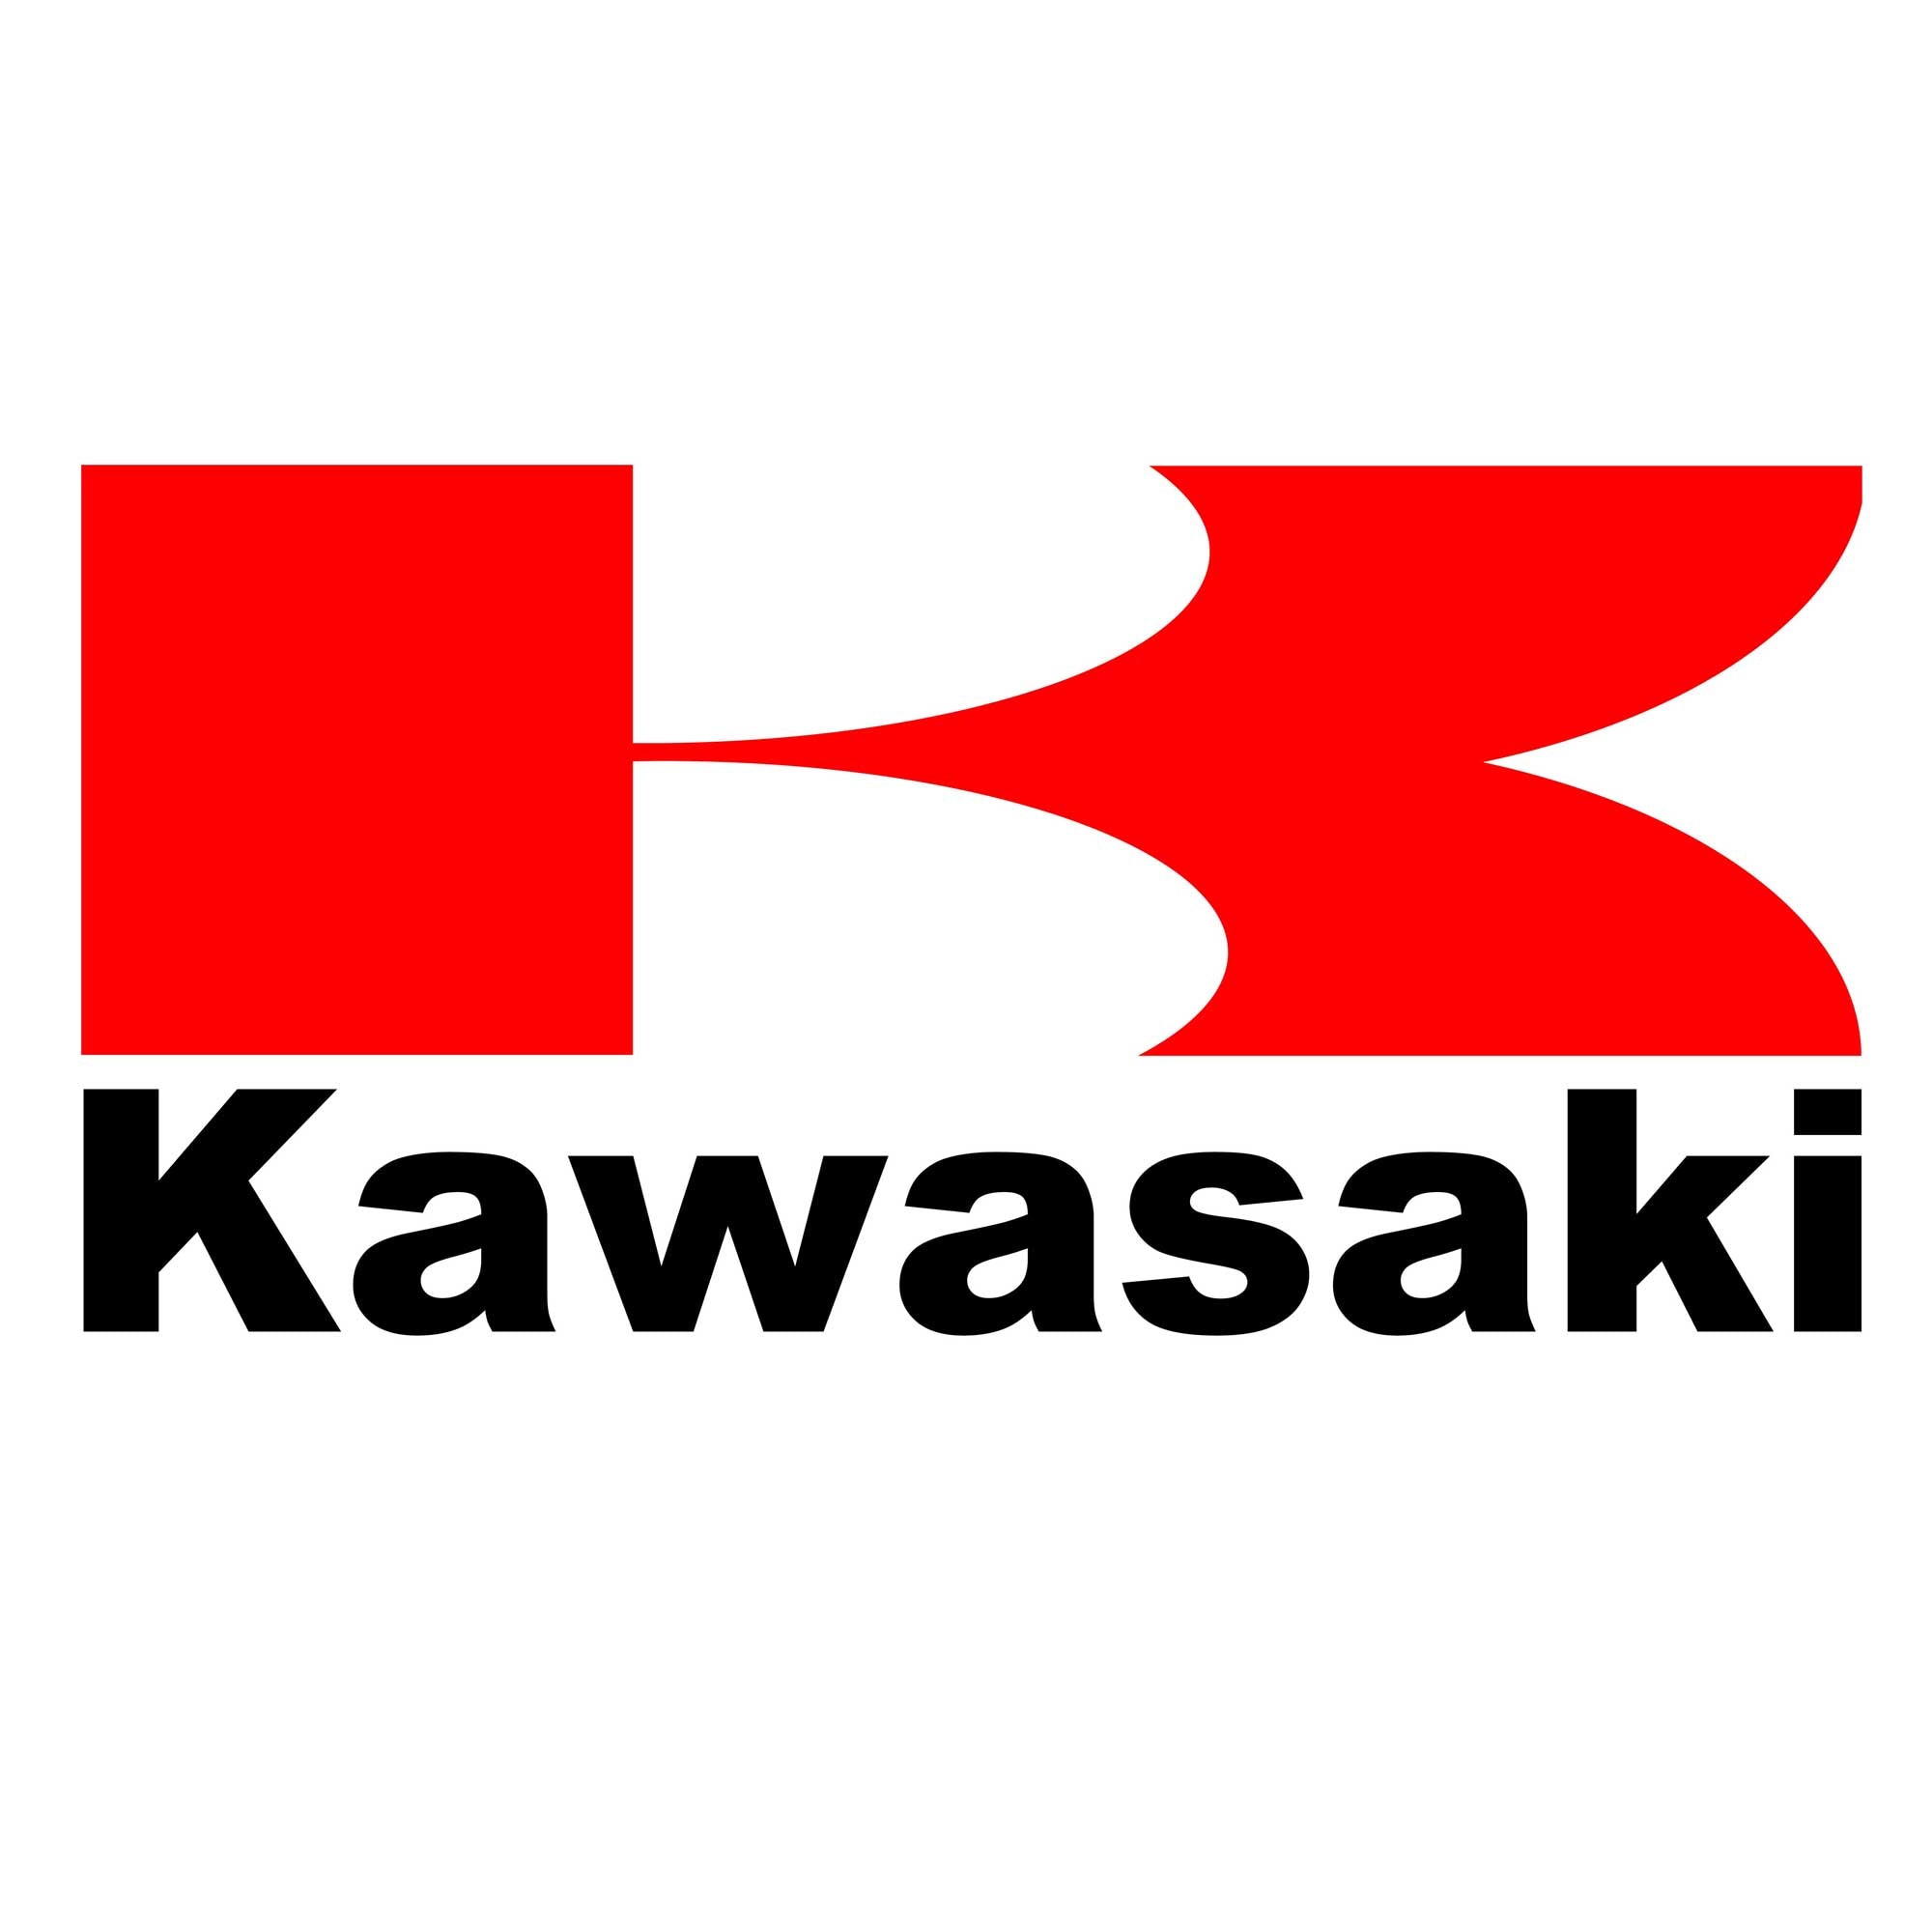 Kawasaki – ayiddue